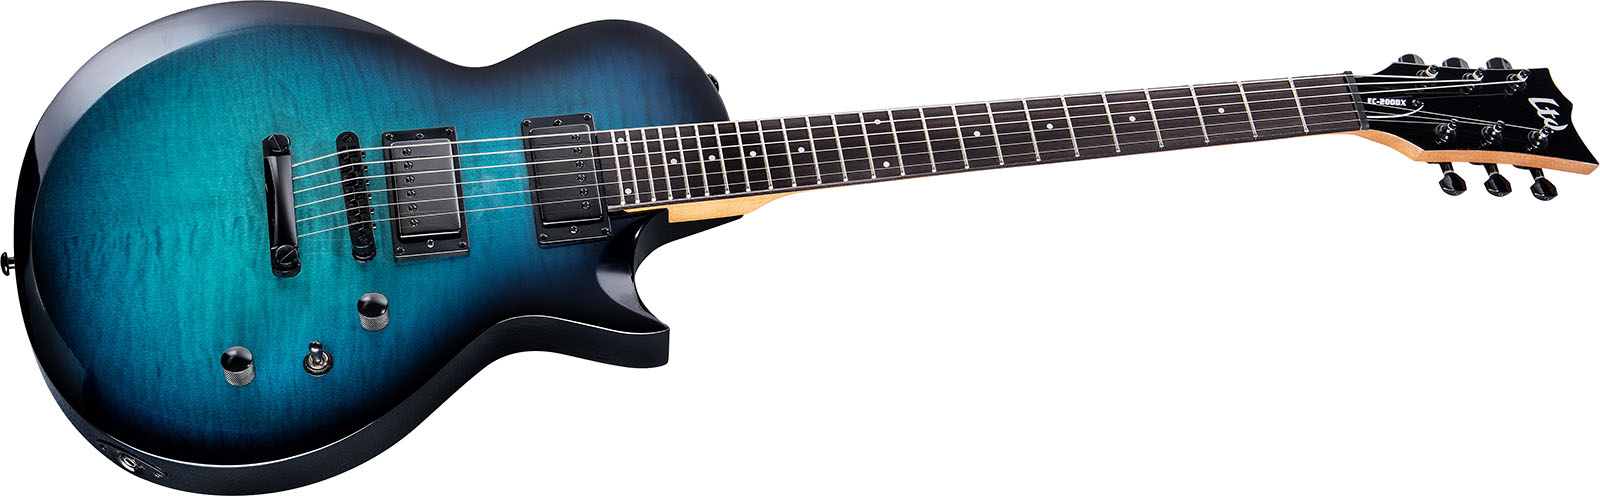 Ltd Ec200dx 2h Ht Rw - Charcoal Burst - Enkel gesneden elektrische gitaar - Variation 2